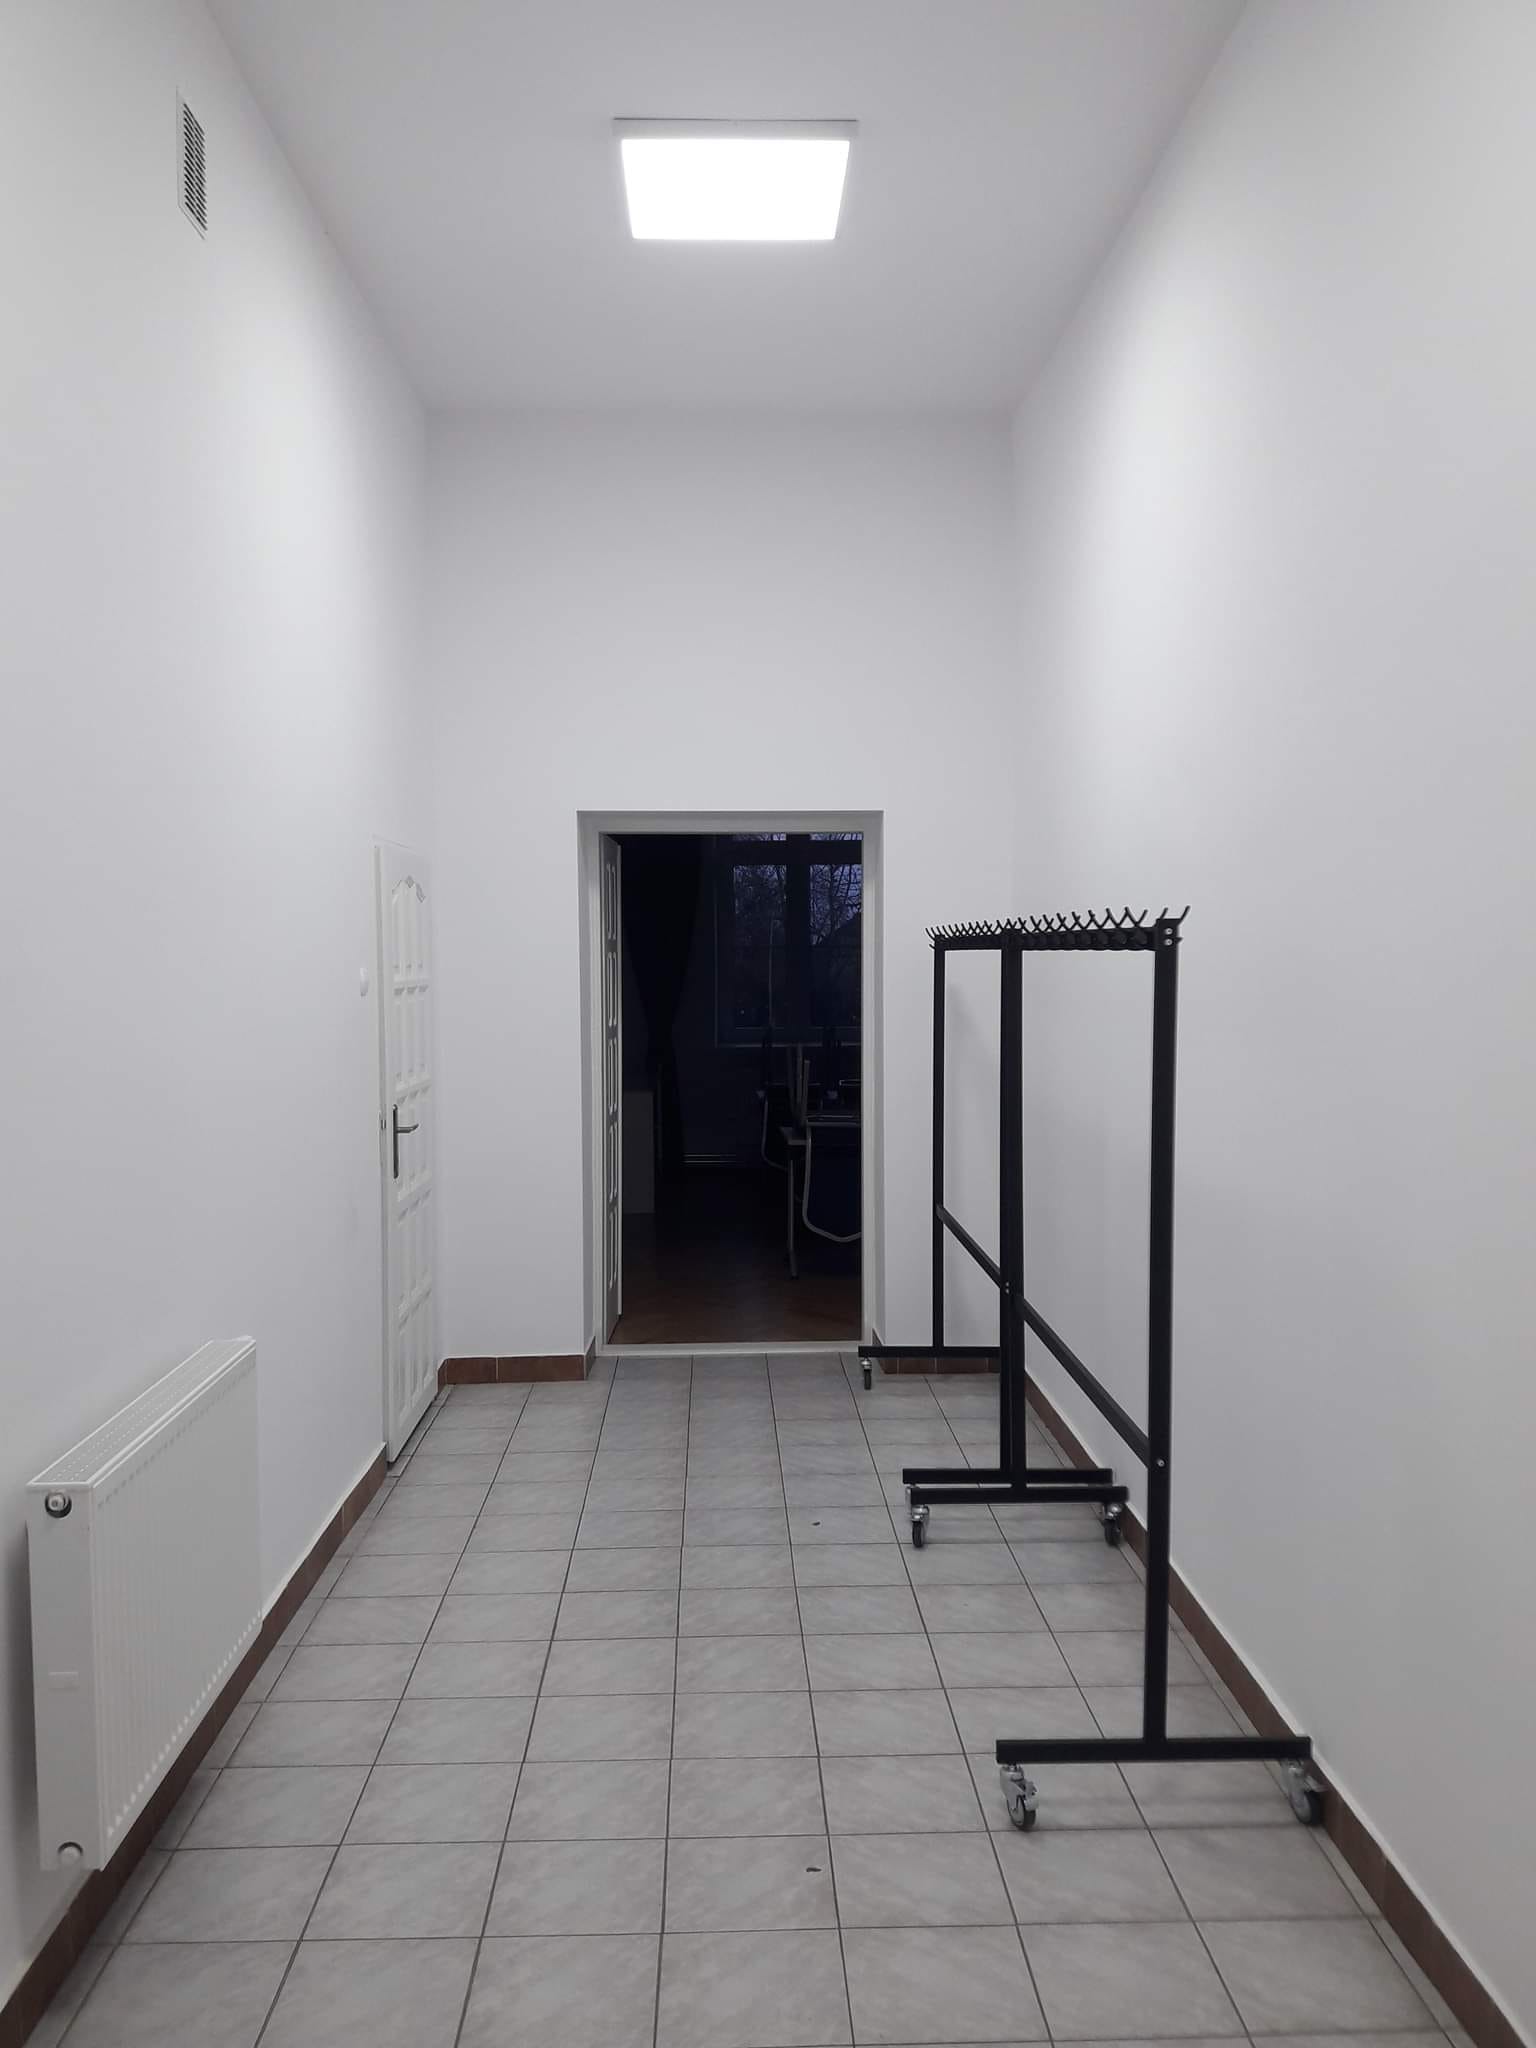 zdjęcie przedstawia odnowiony korytarz w budynku Domu Ludowego w Demblinie